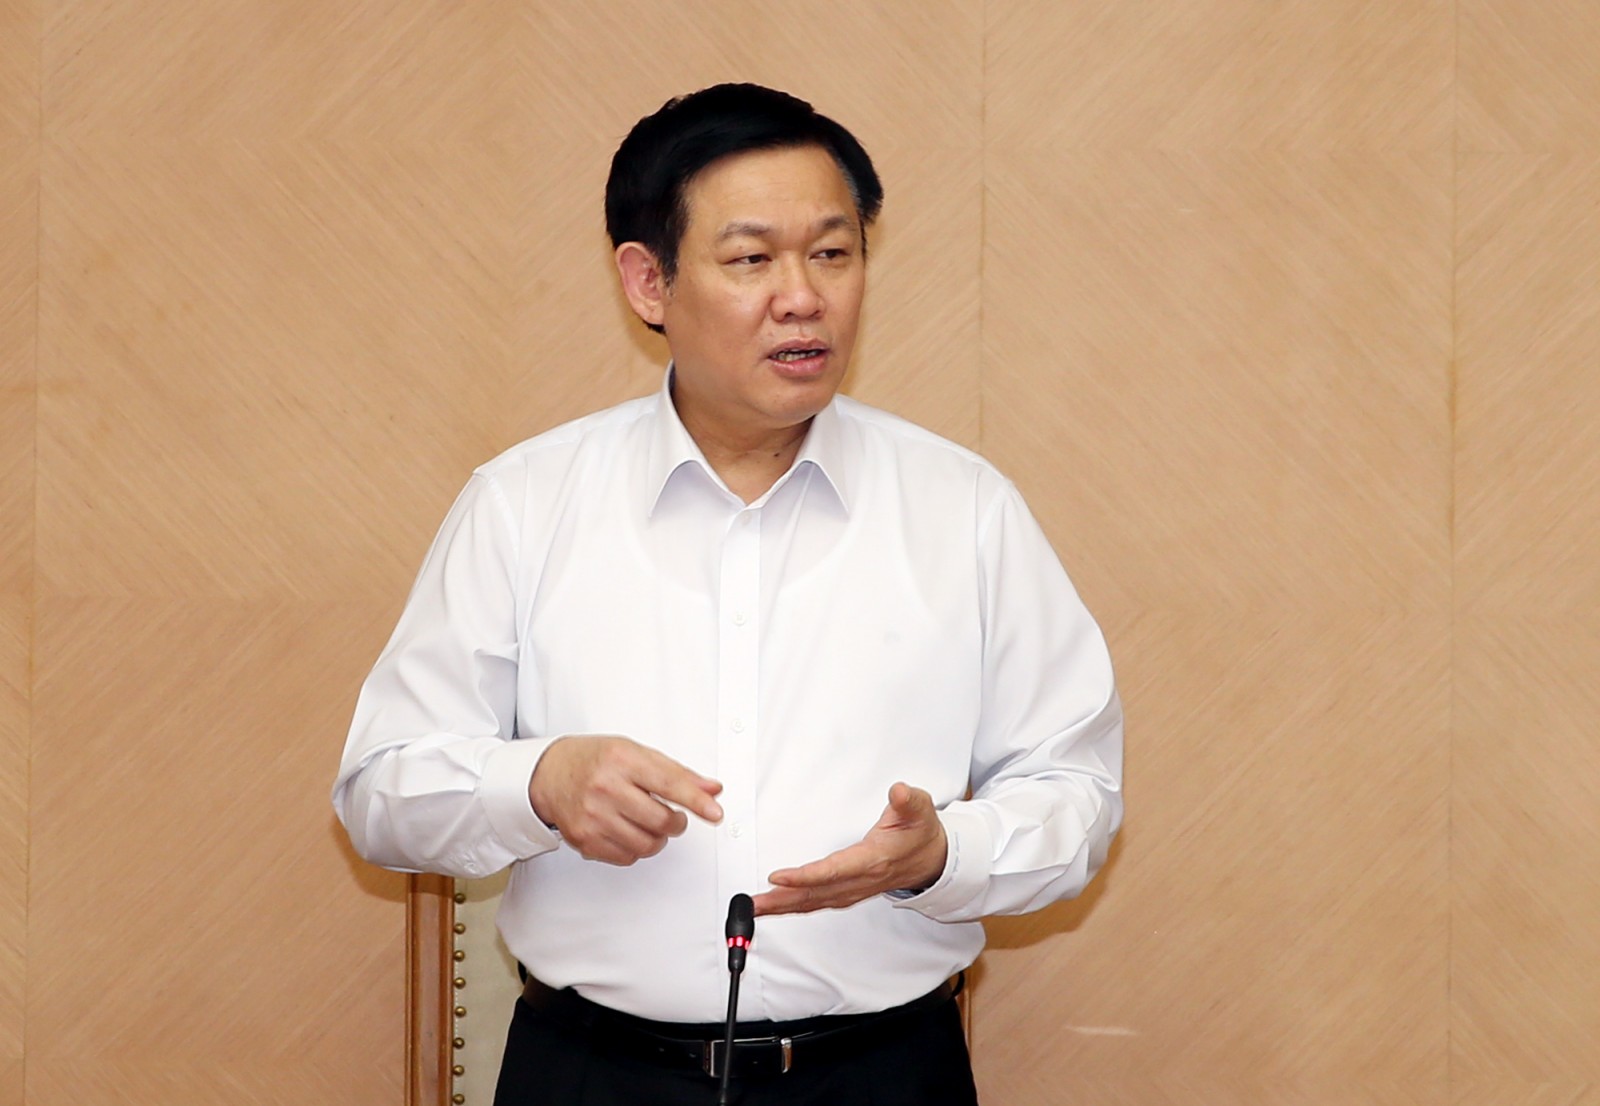 Phó Thủ tướng Vương Đình Huệ yêu cầu Bộ trưởng Bộ KH&ĐT tổ chức kiểm điểm trách nhiệm các cá nhân, tập thể trong việc chậm giải ngân vốn đầu tư công. Ảnh: VGP/Thành Chung.